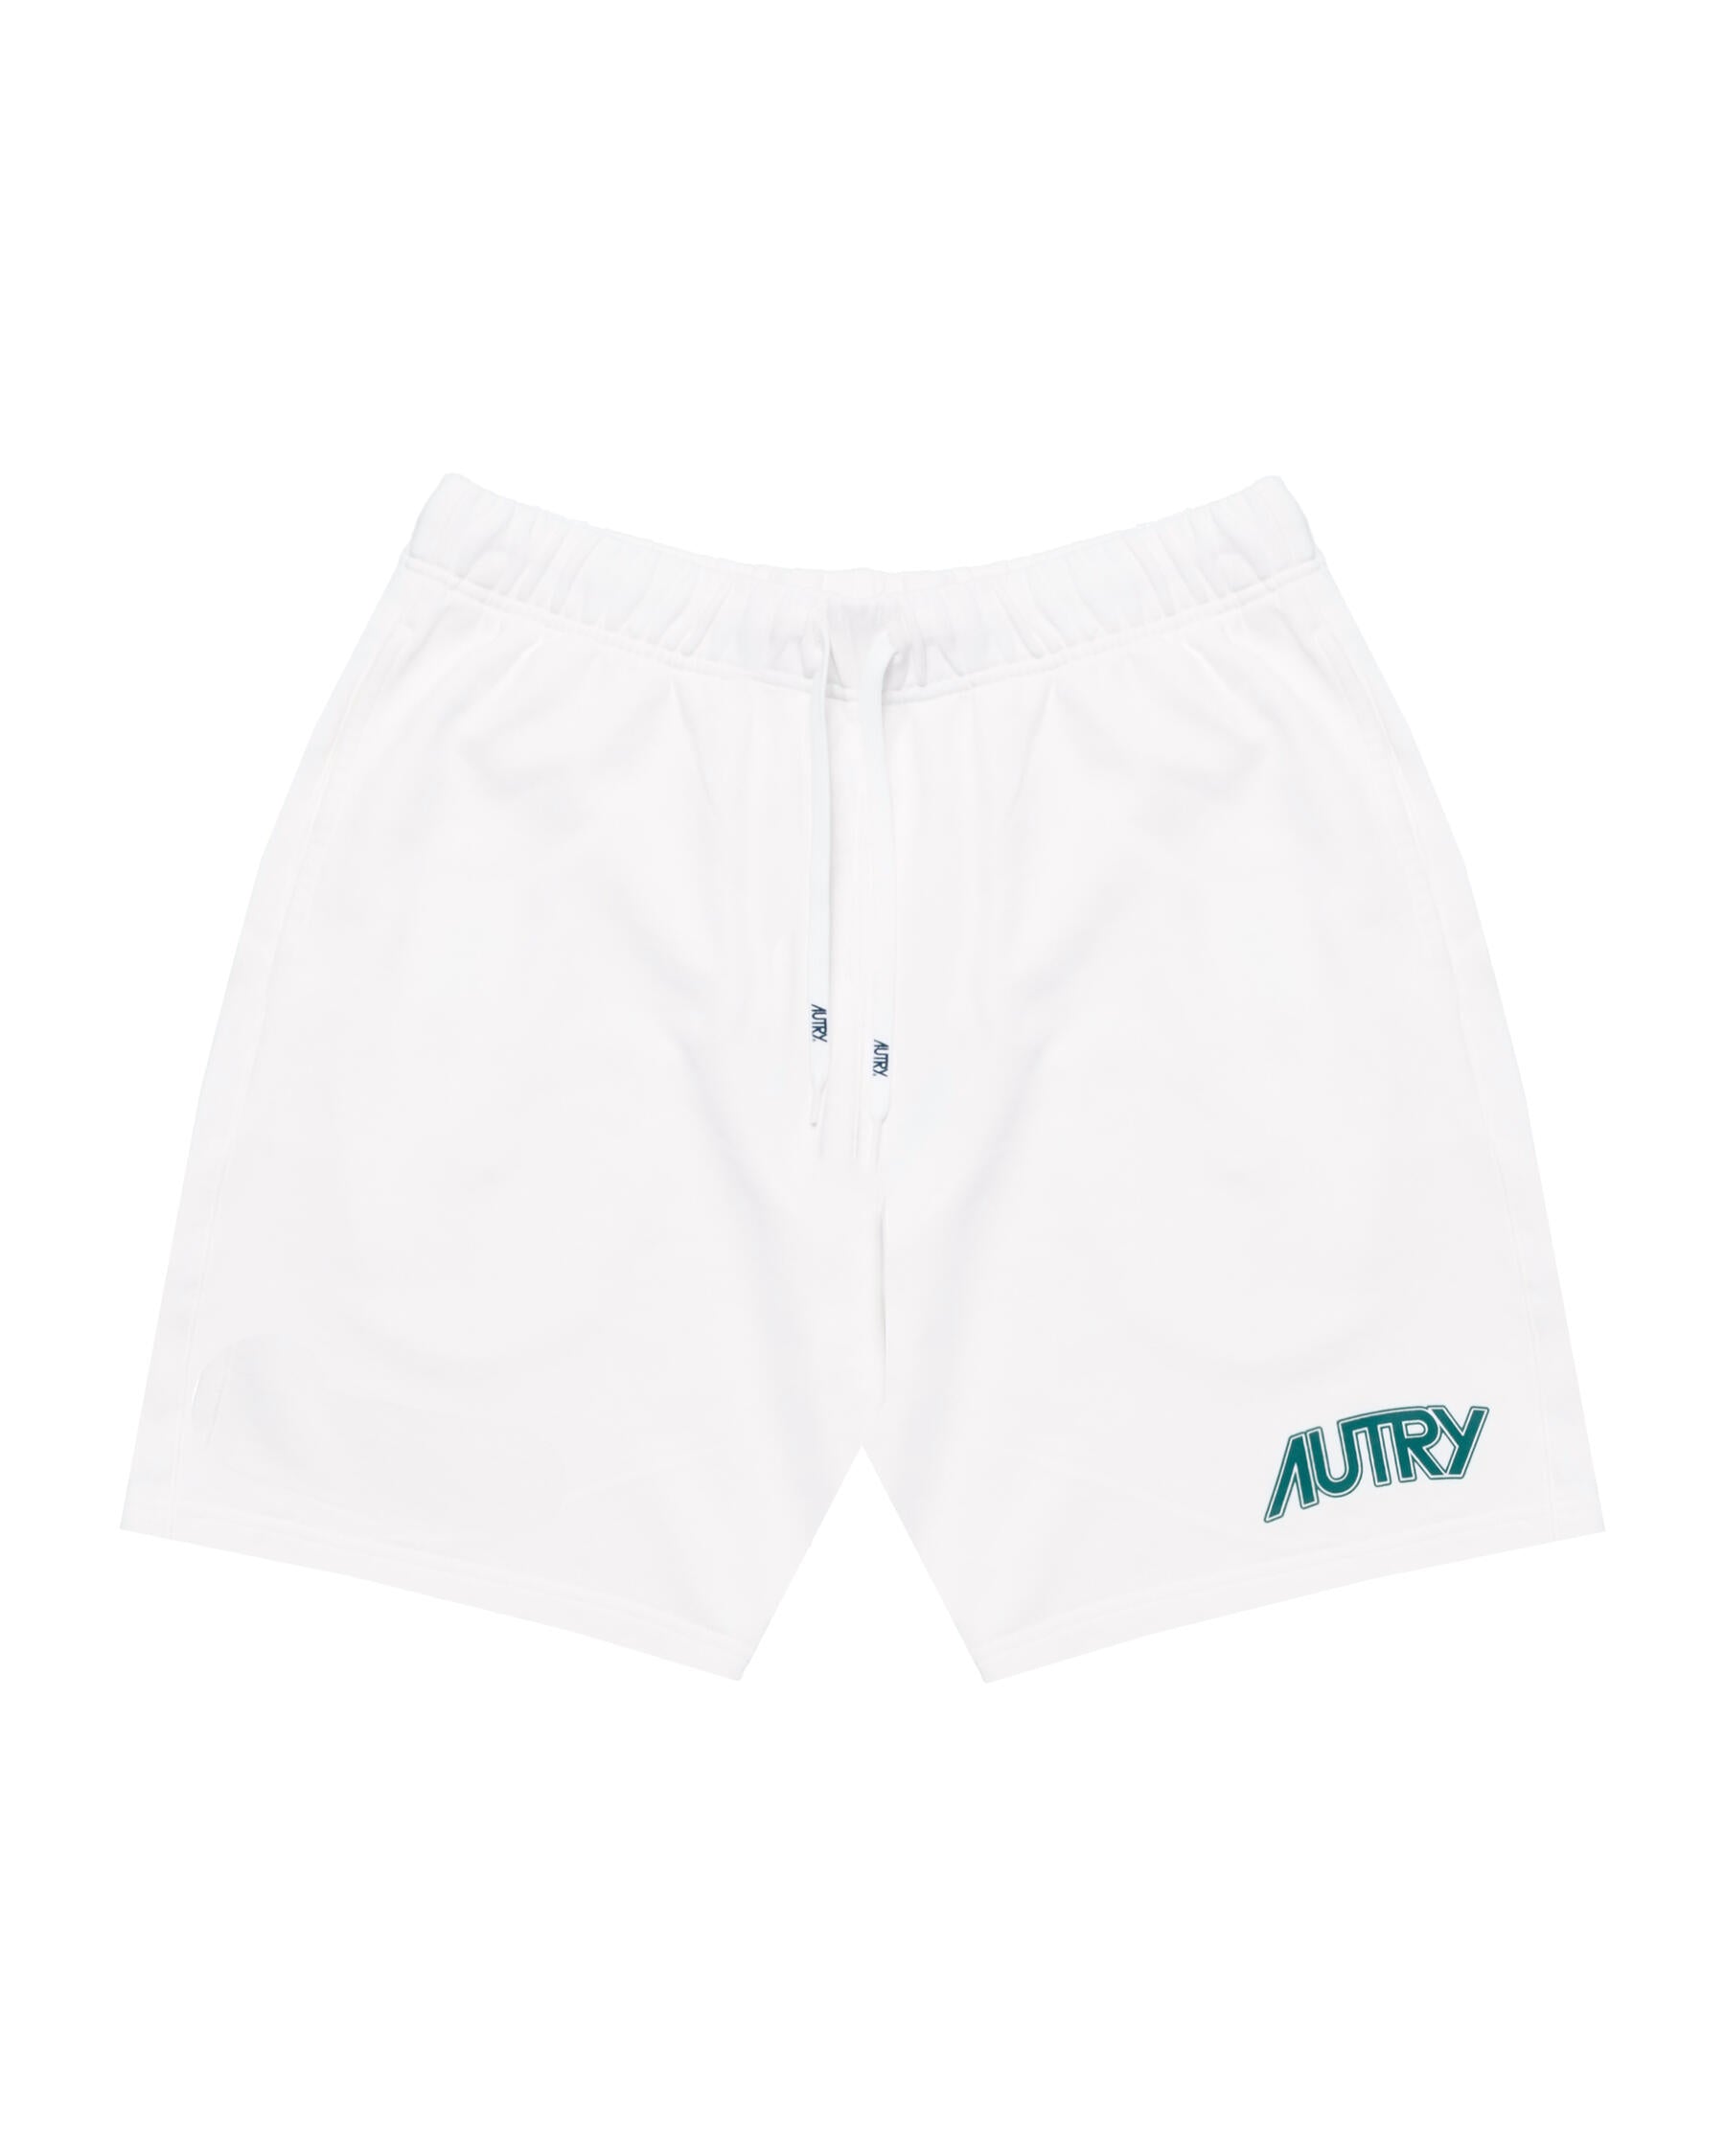 AUTRY Shorts Uomo Main Man White